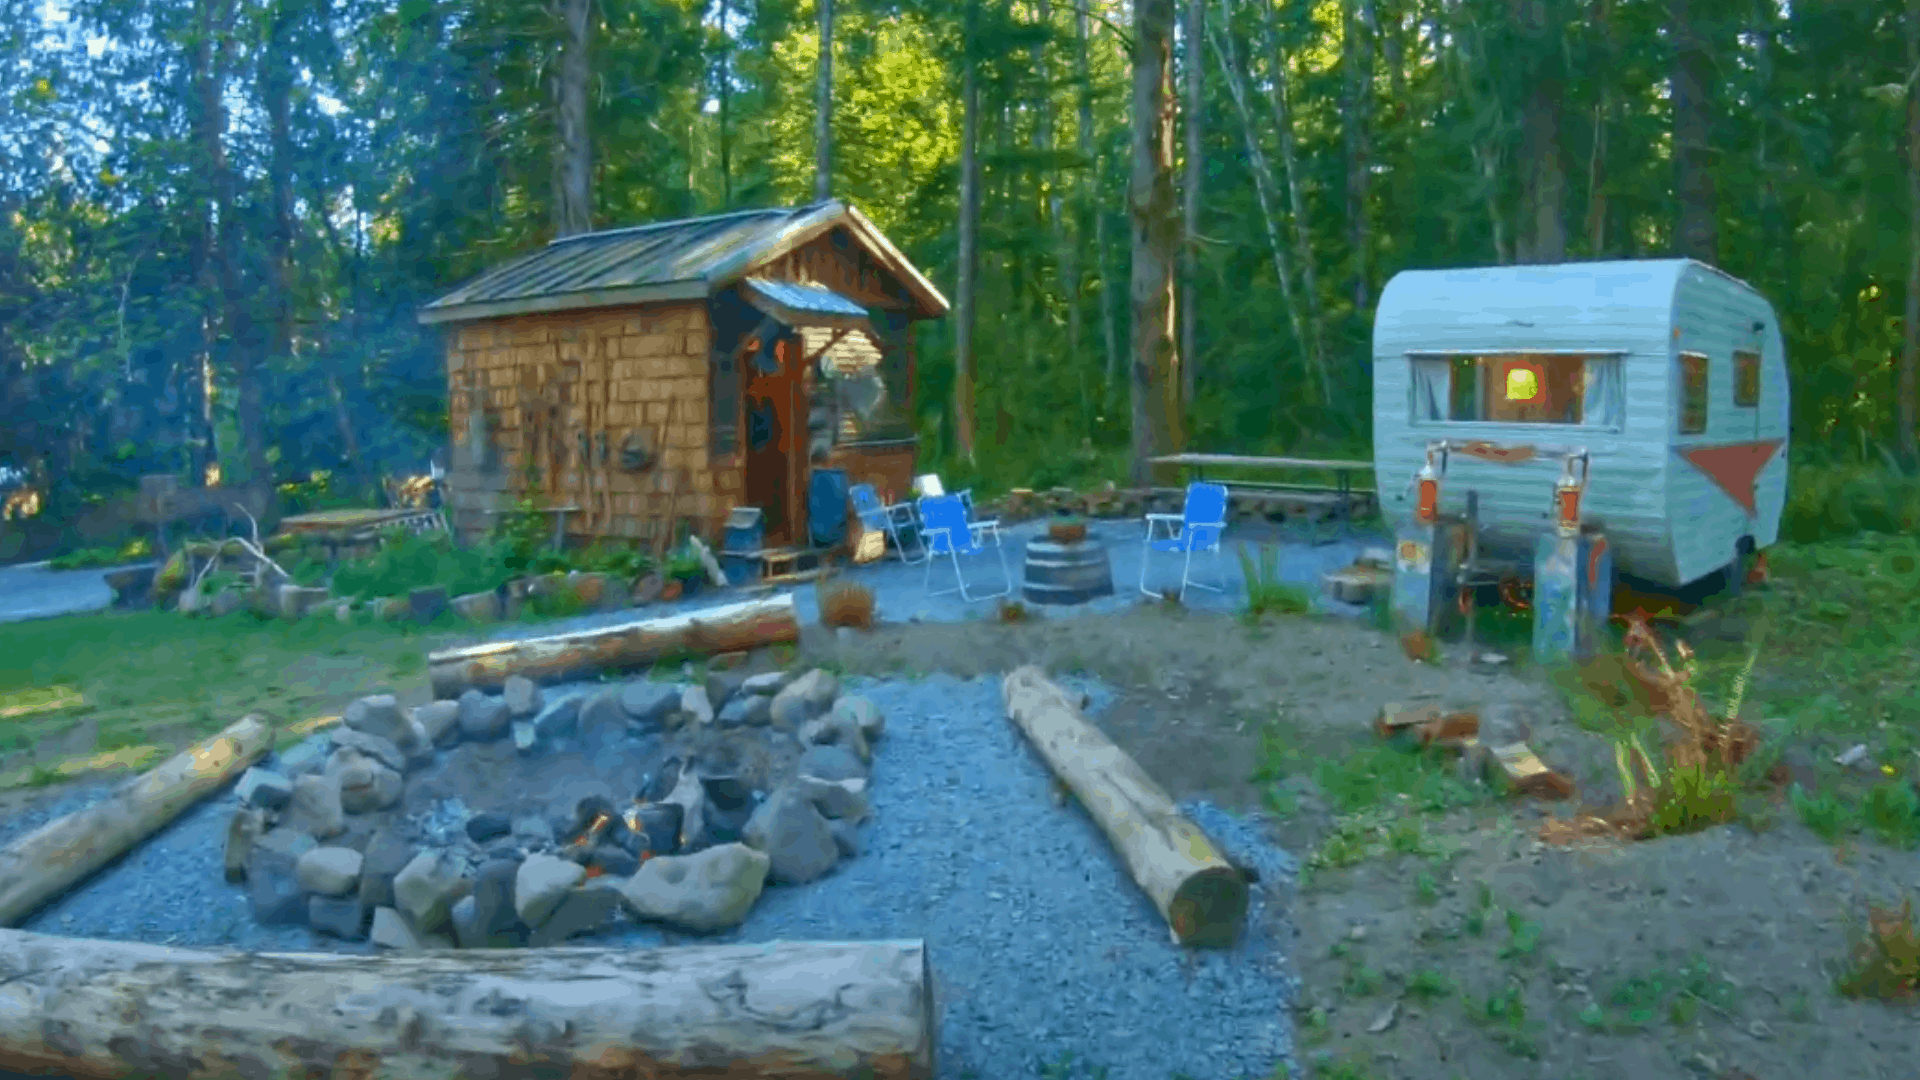 NEW Adventure Solo Camper Near Mt. Rainier